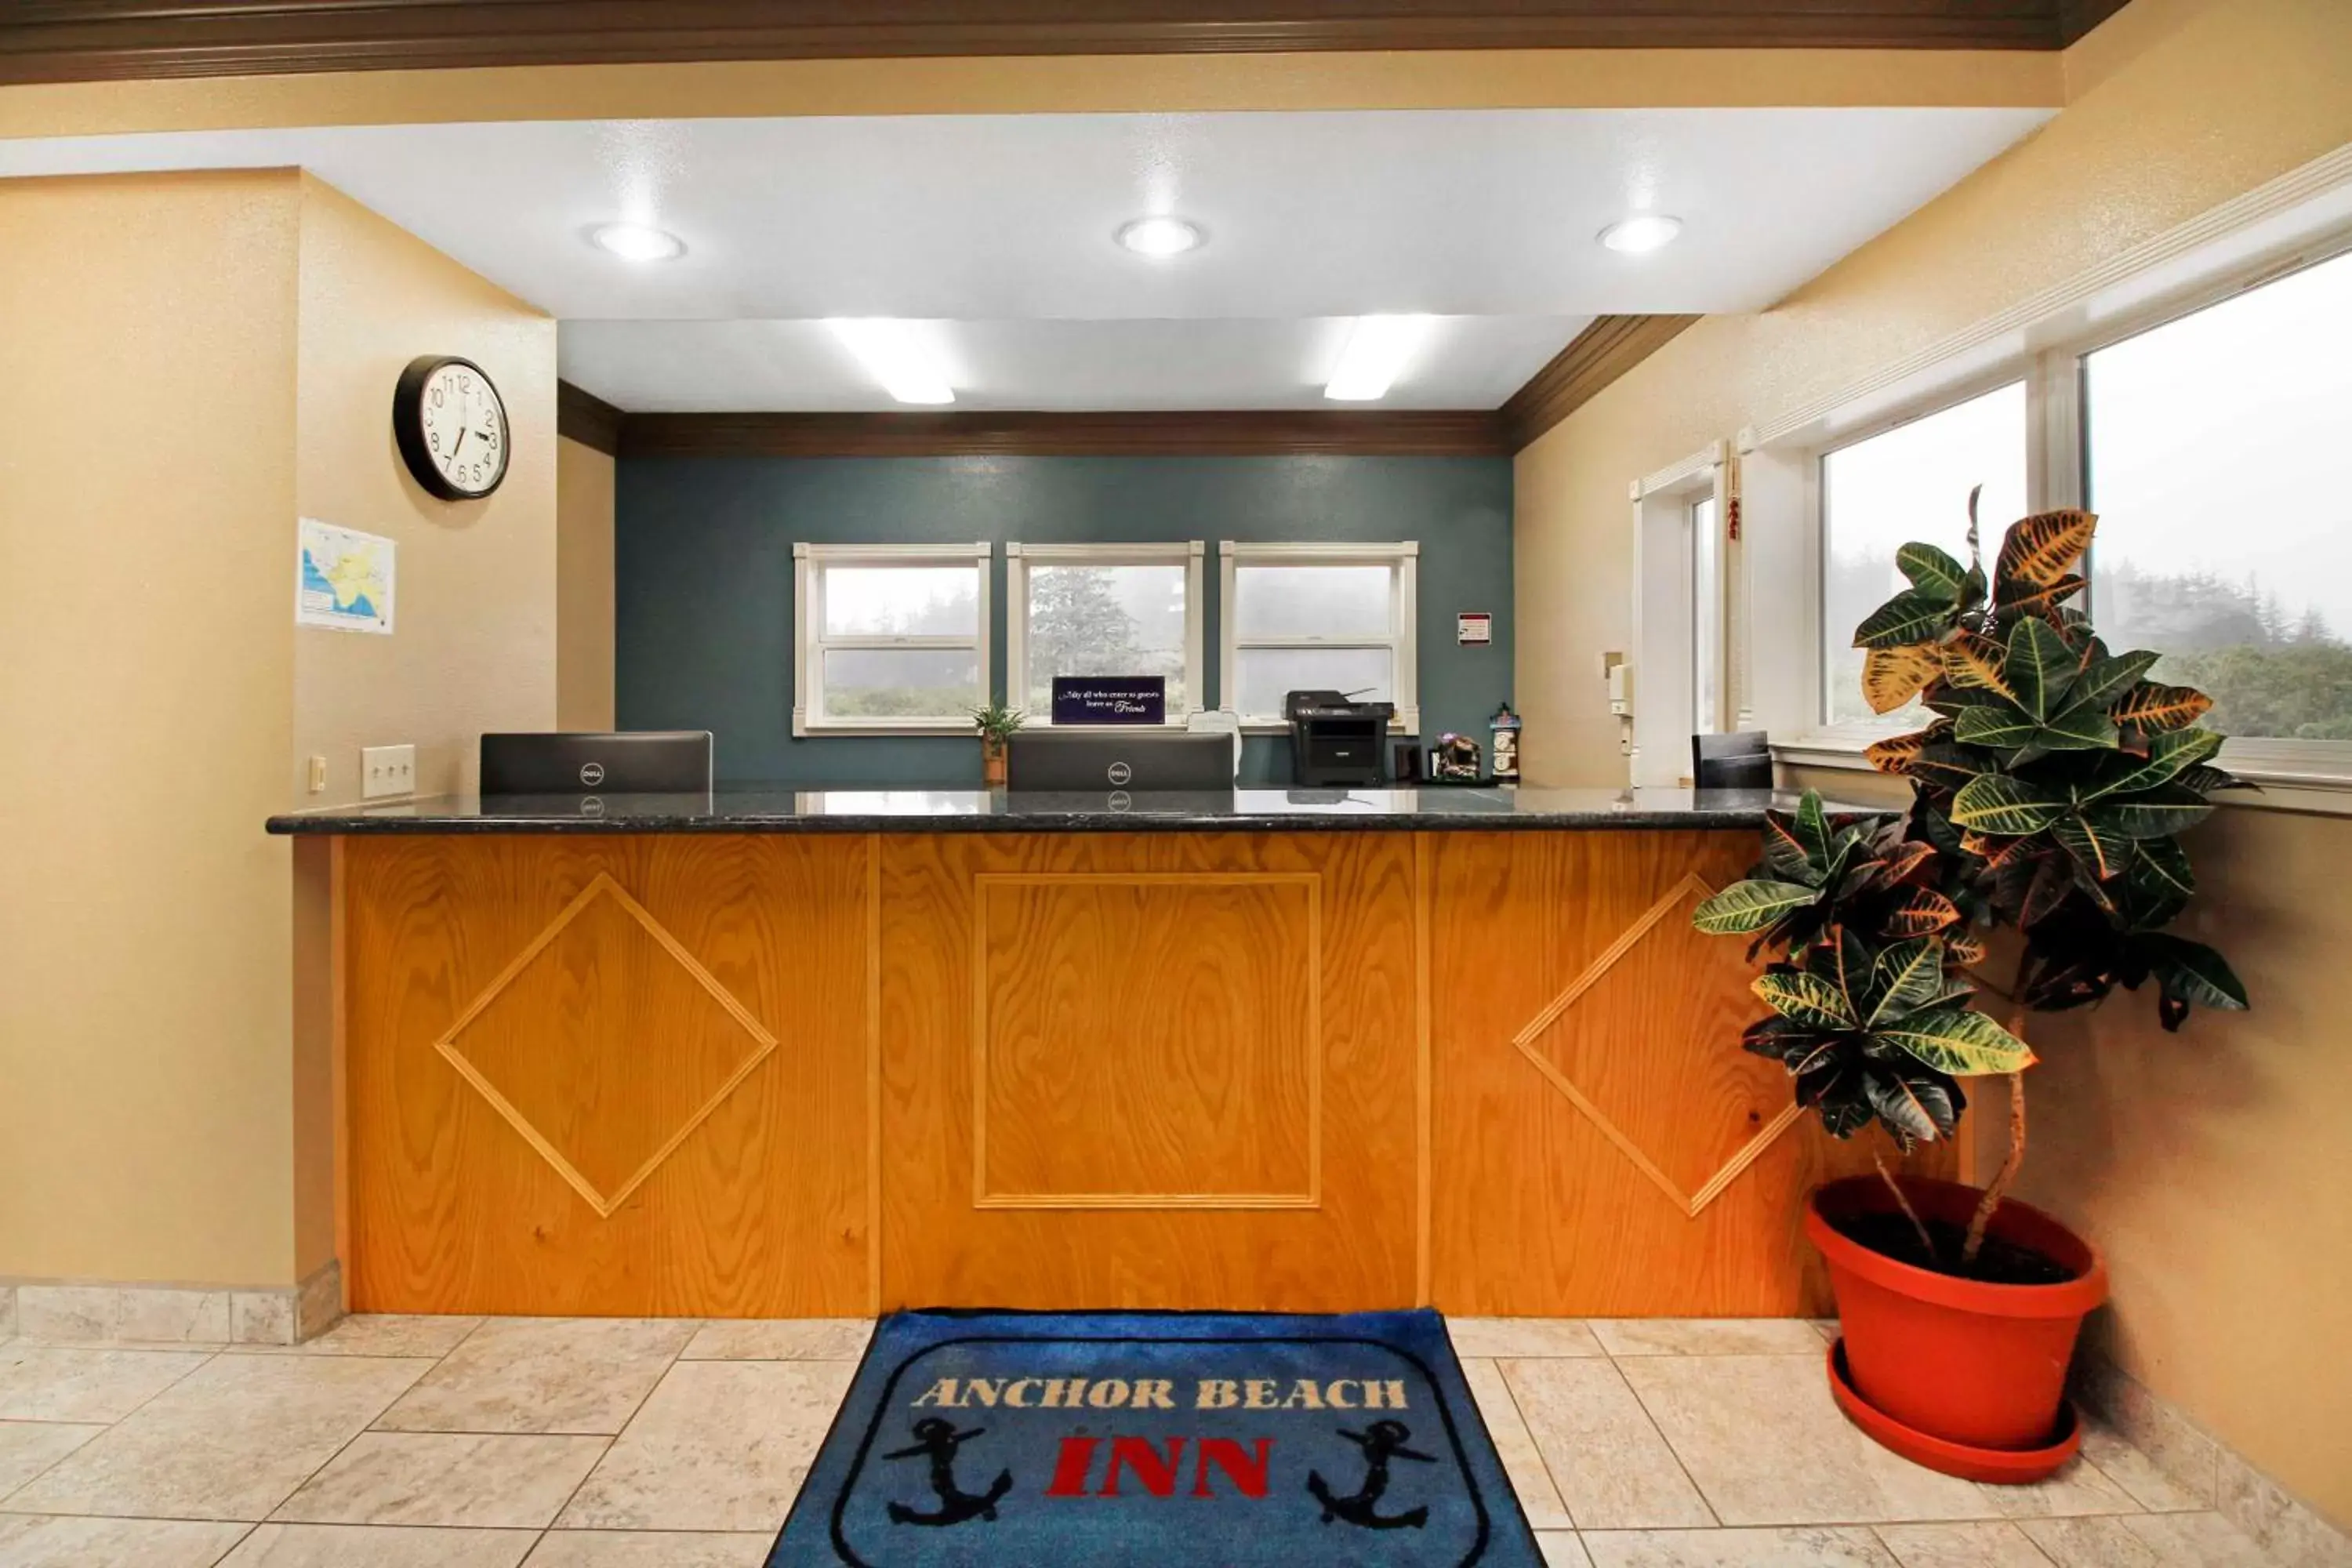 Lobby or reception, Lobby/Reception in Anchor Beach Inn